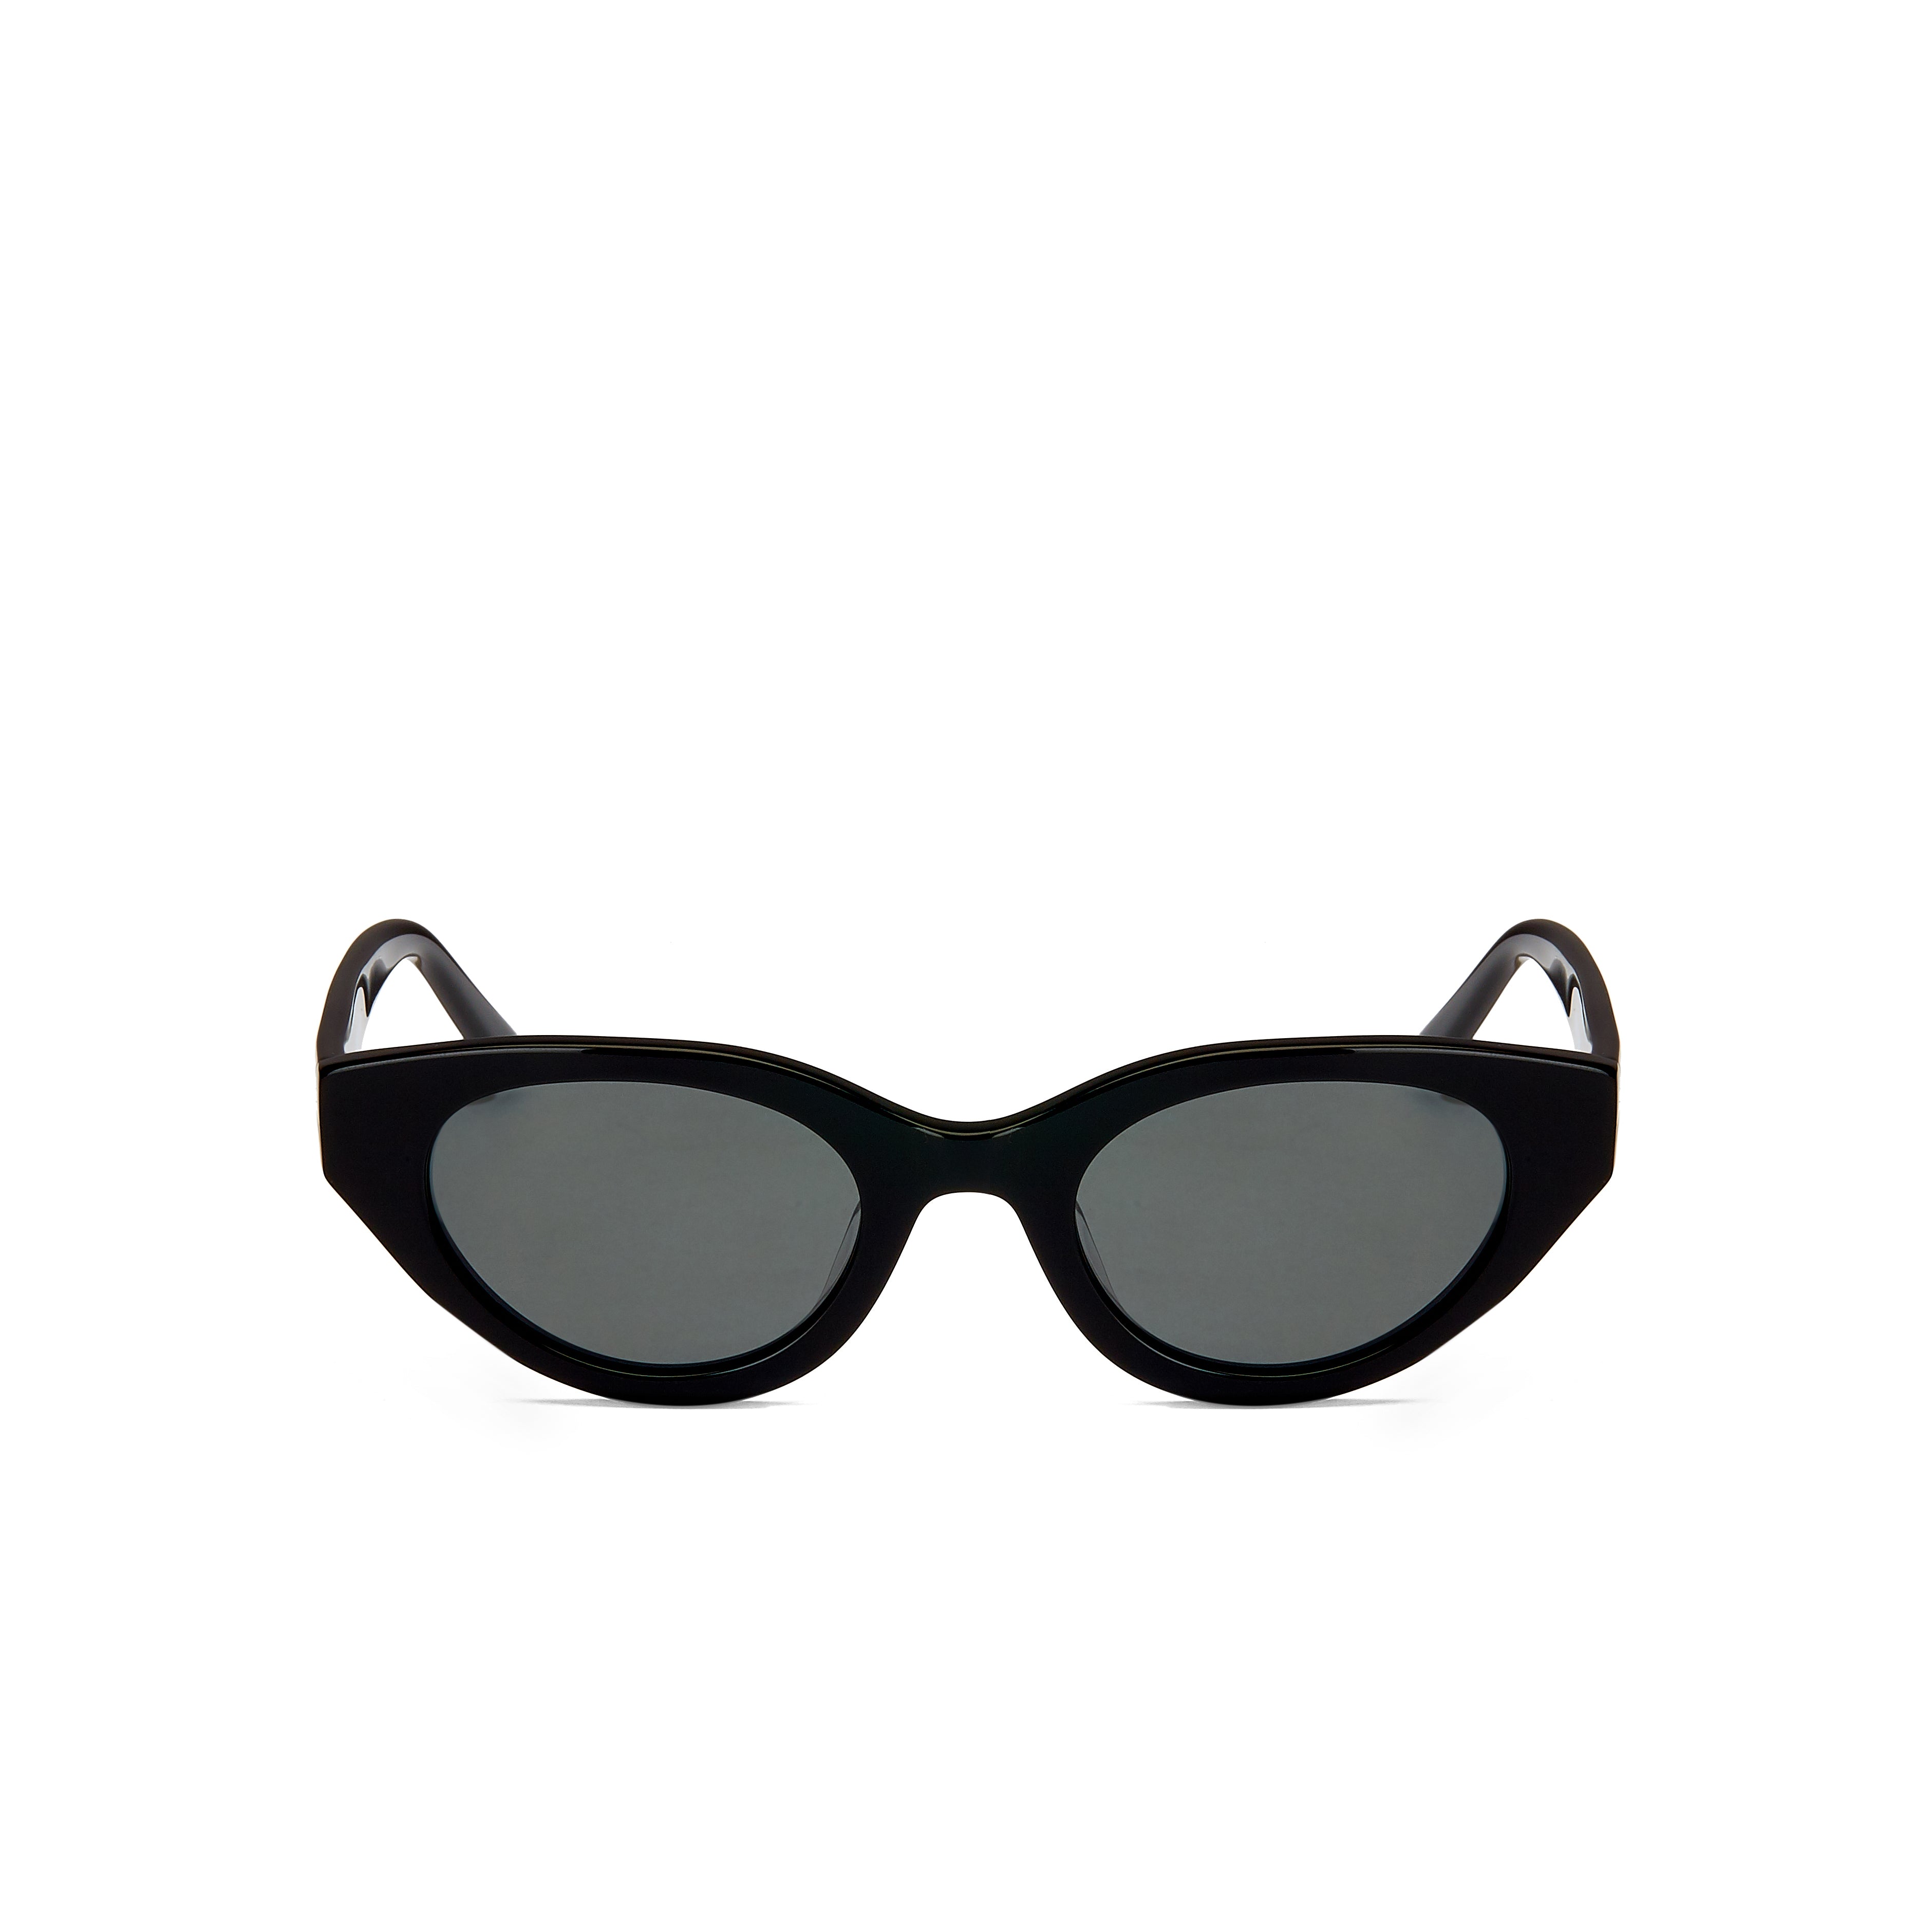 Girls Trip Slim Cat Eye Women's Sunglasses